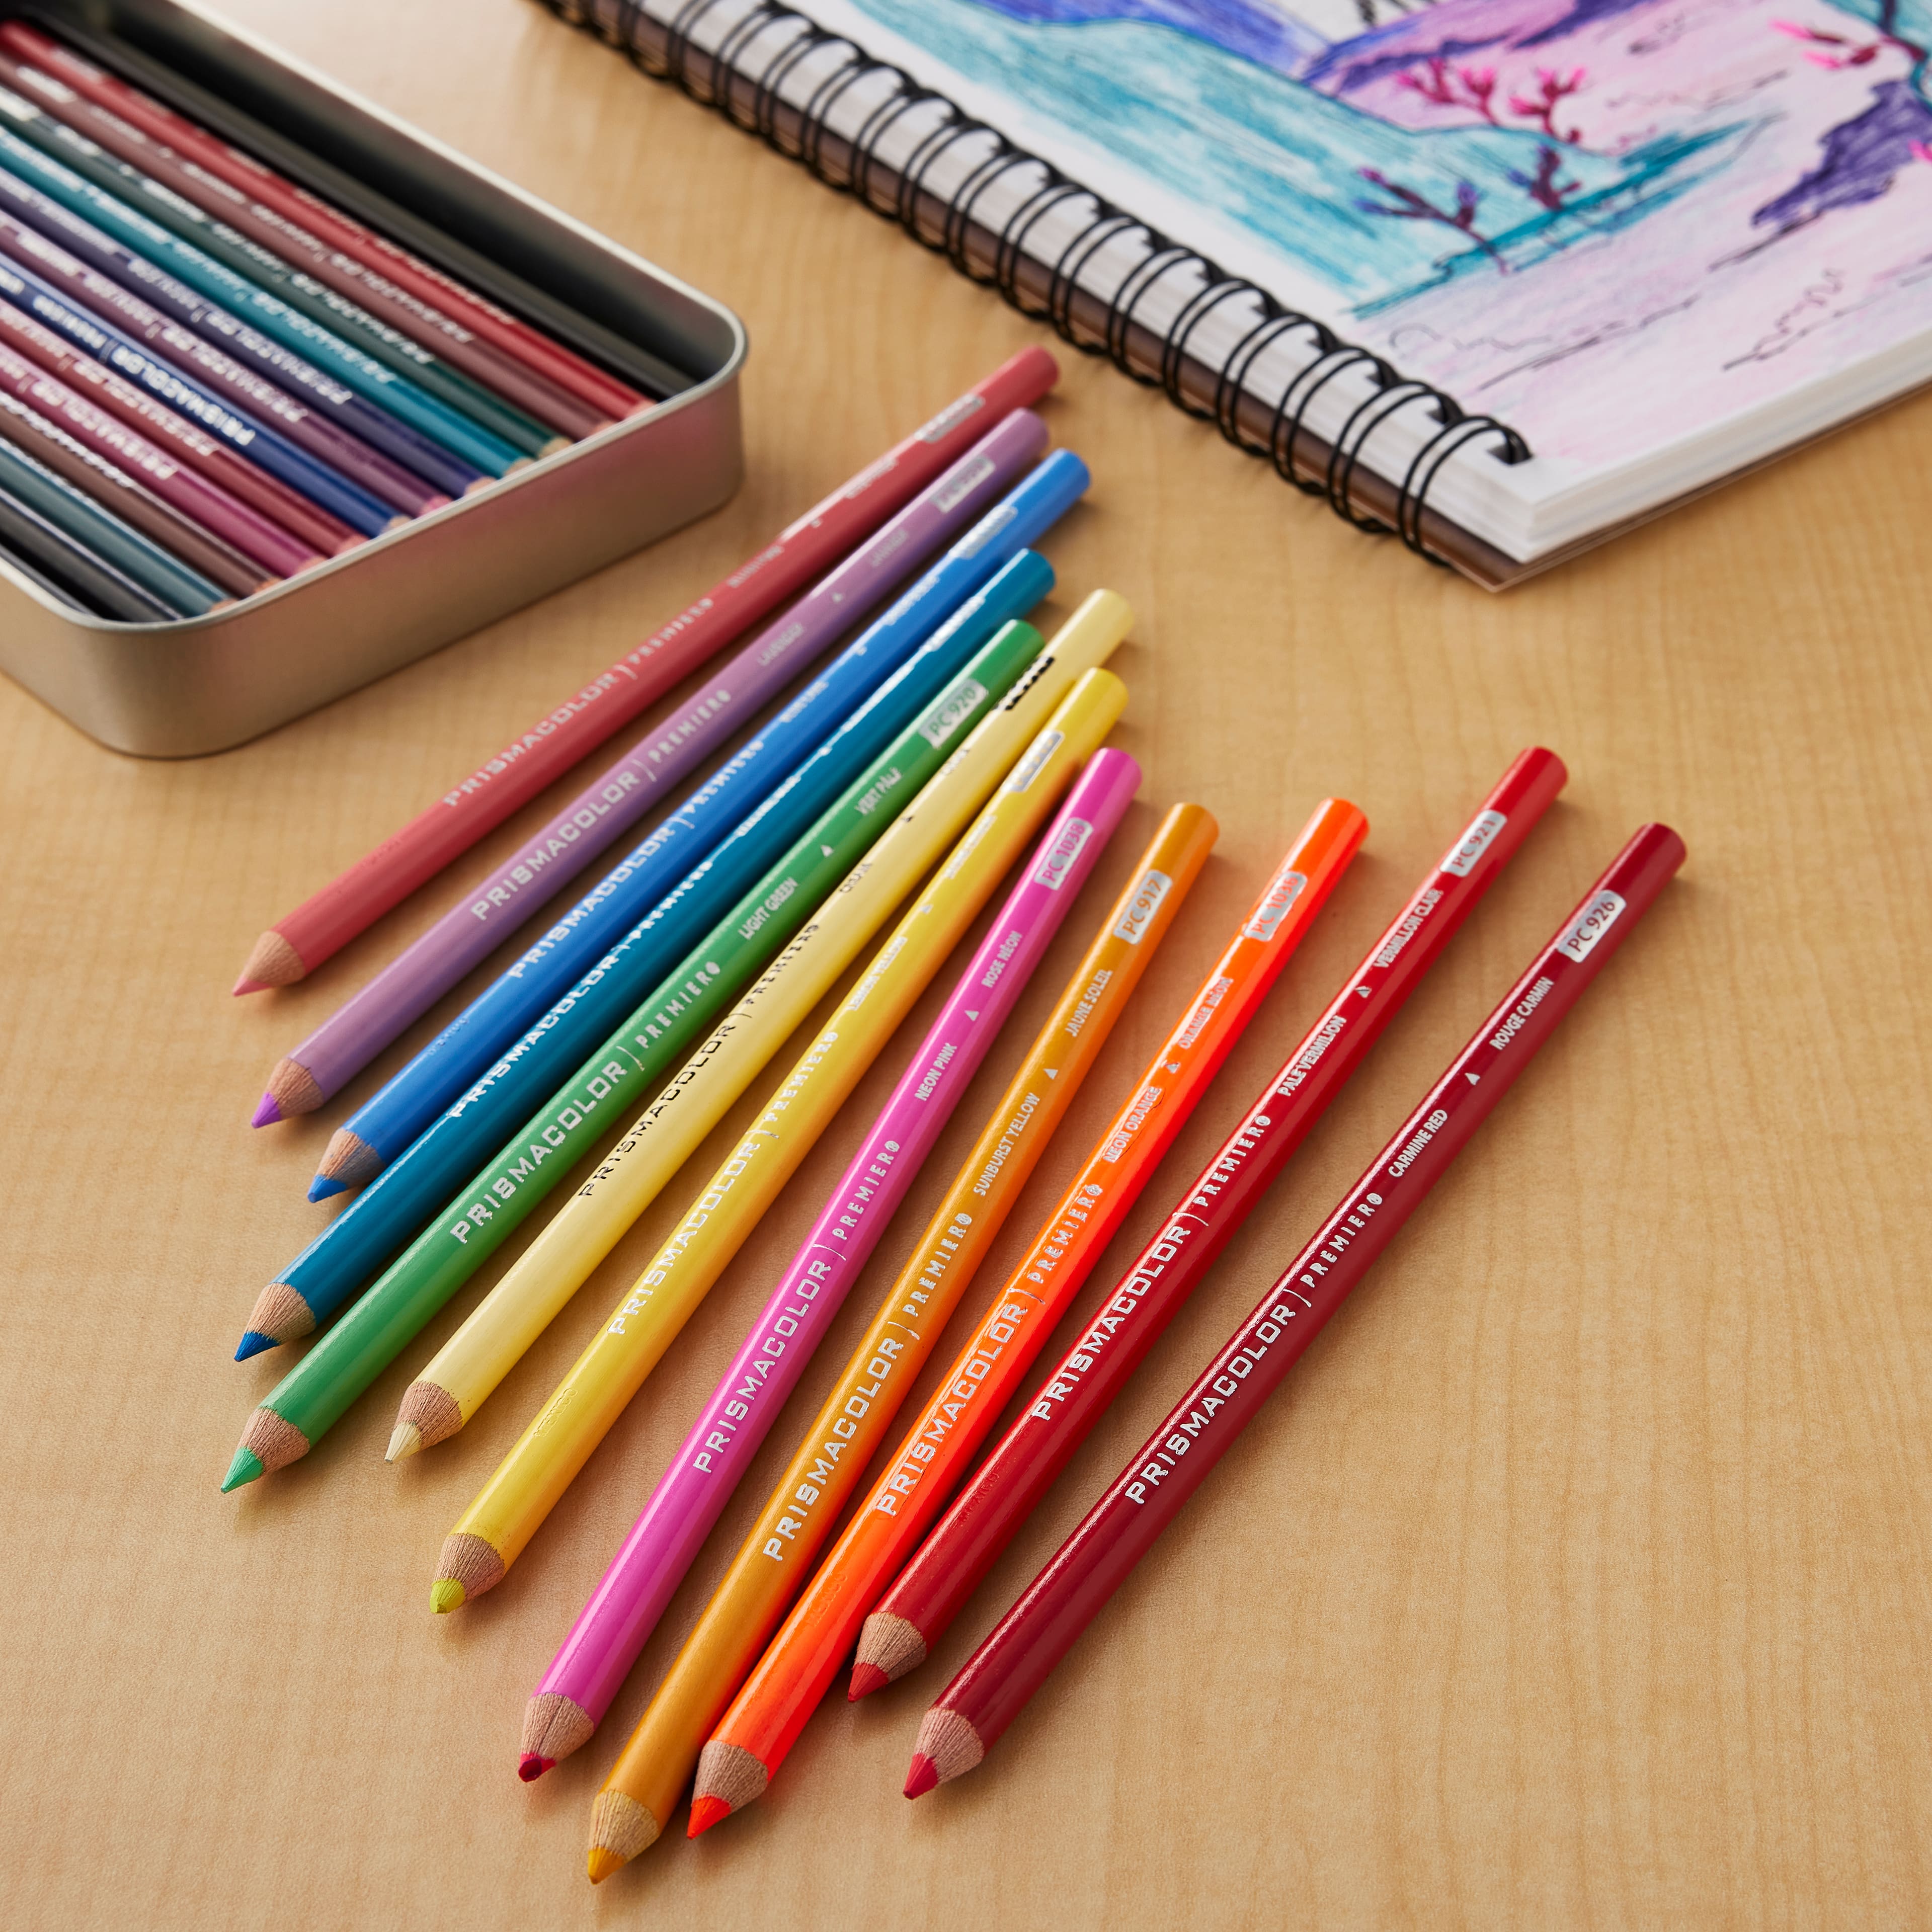 Prismacolor Premier Colored Pencil PC1038 Neon Pink (Set of 12